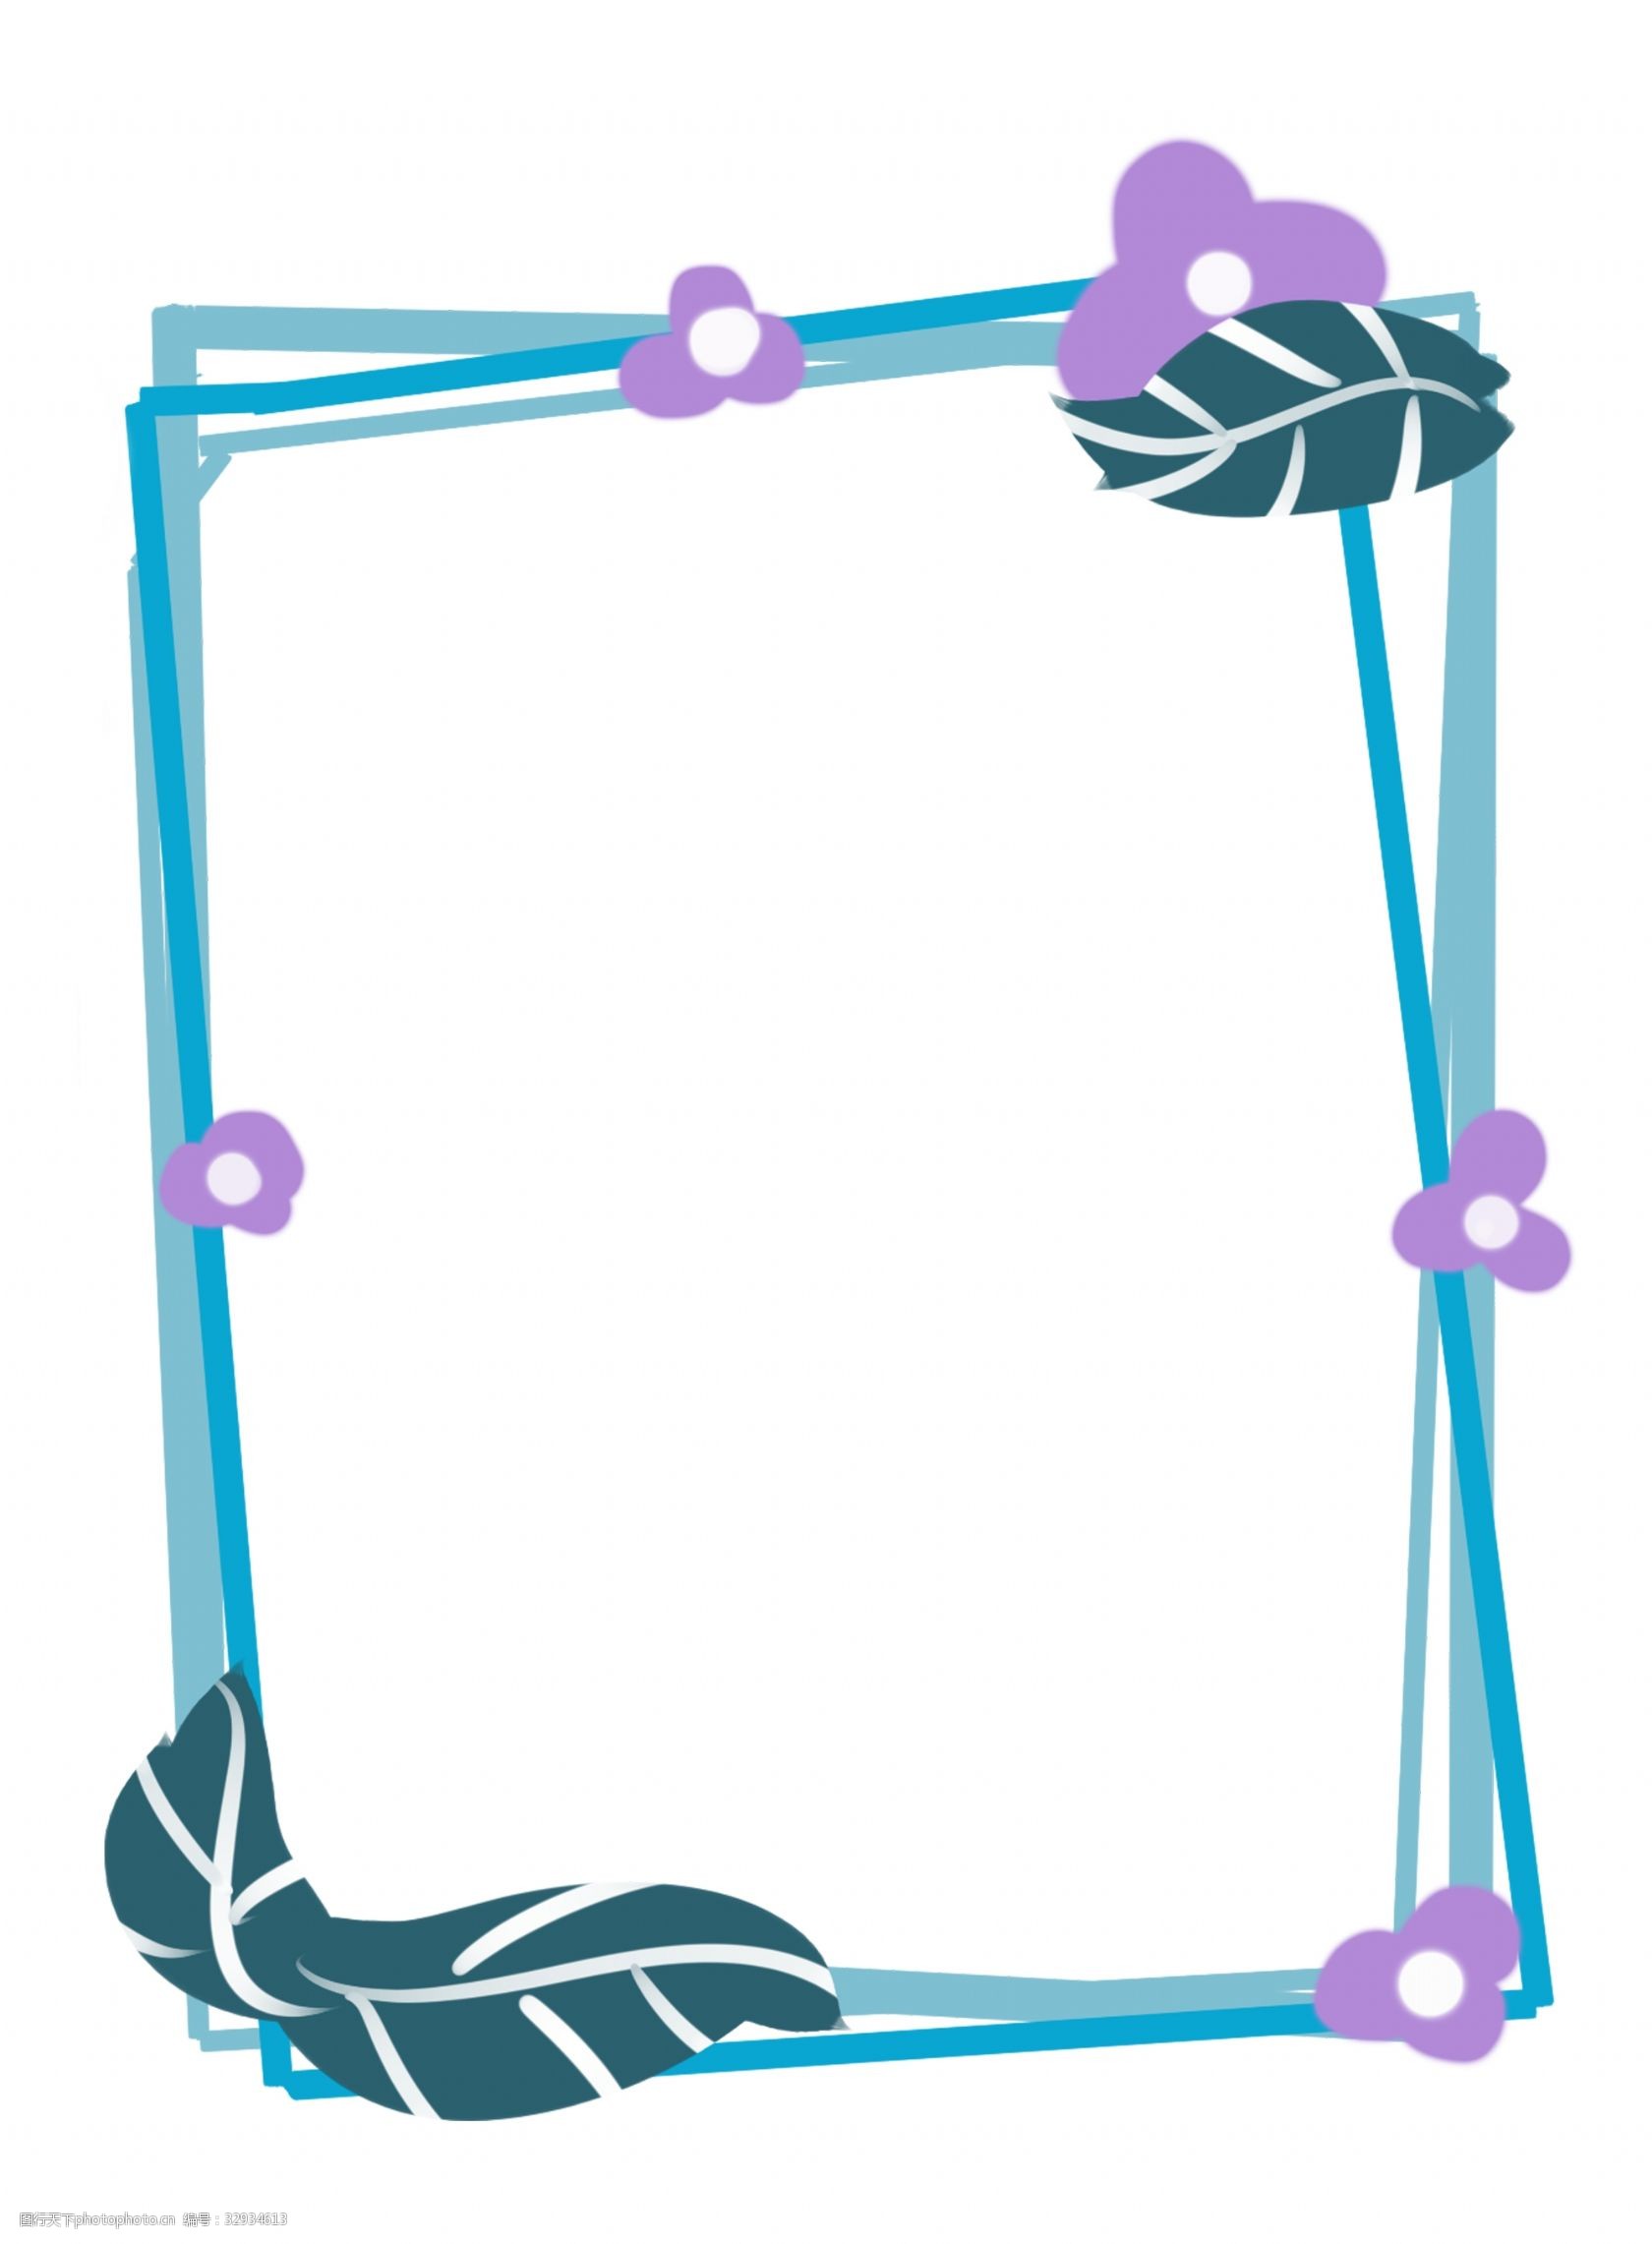 关键词:蓝色小花边框插画 蓝色的边框 小花边框 植物边框 漂亮的边框